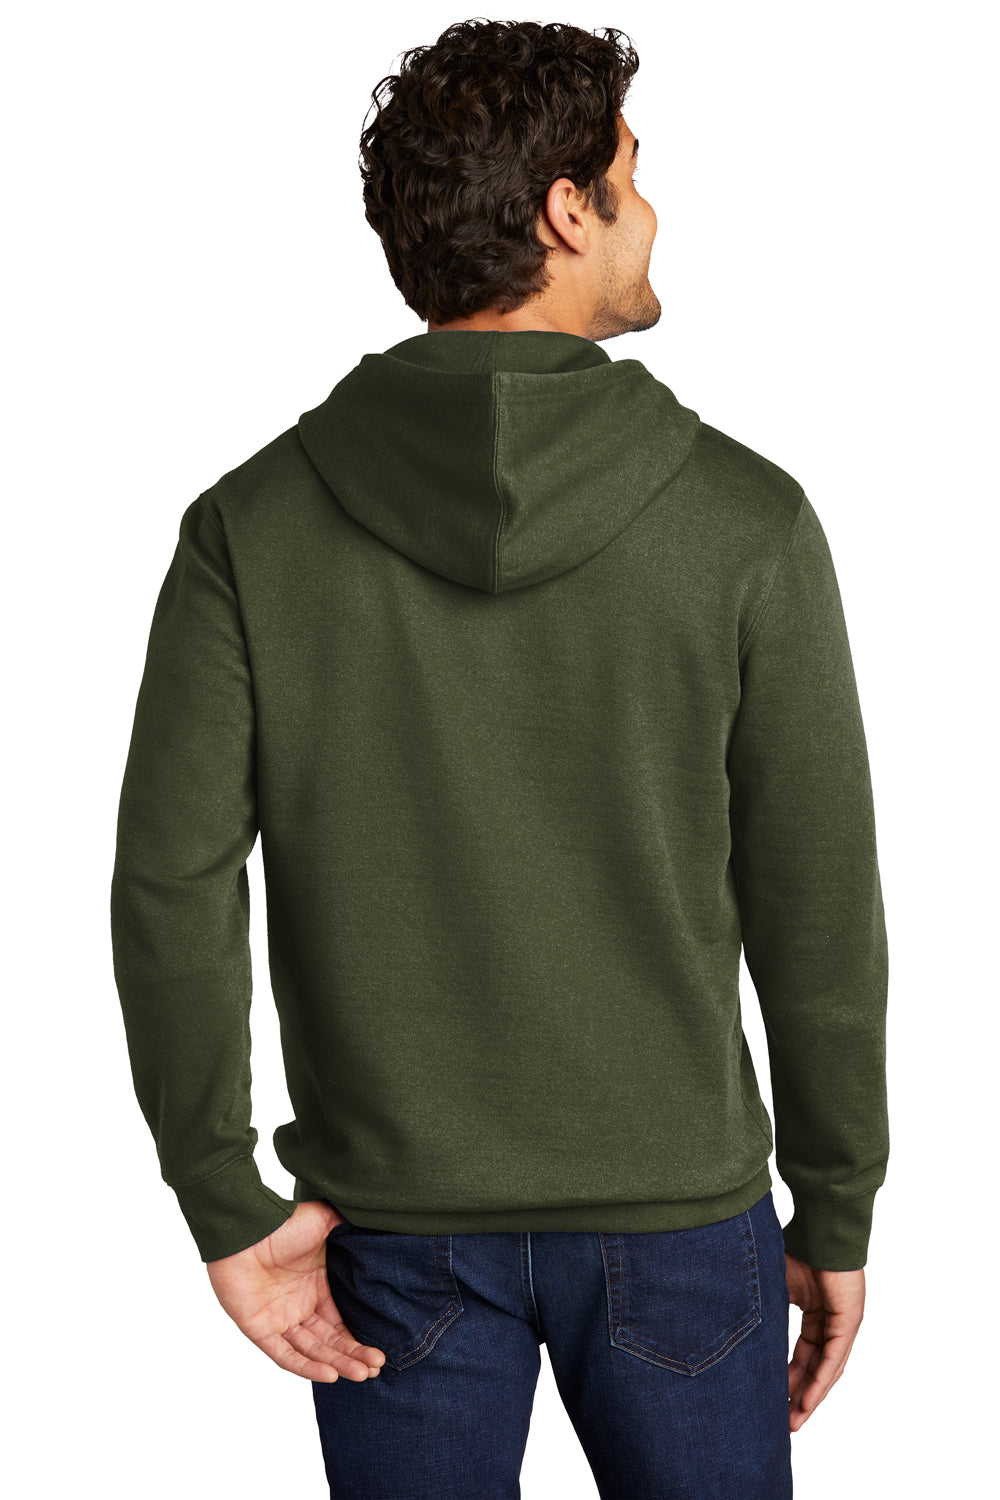 District Mens Very Important Fleece Hooded Sweatshirt Hoodie Olive Green Side